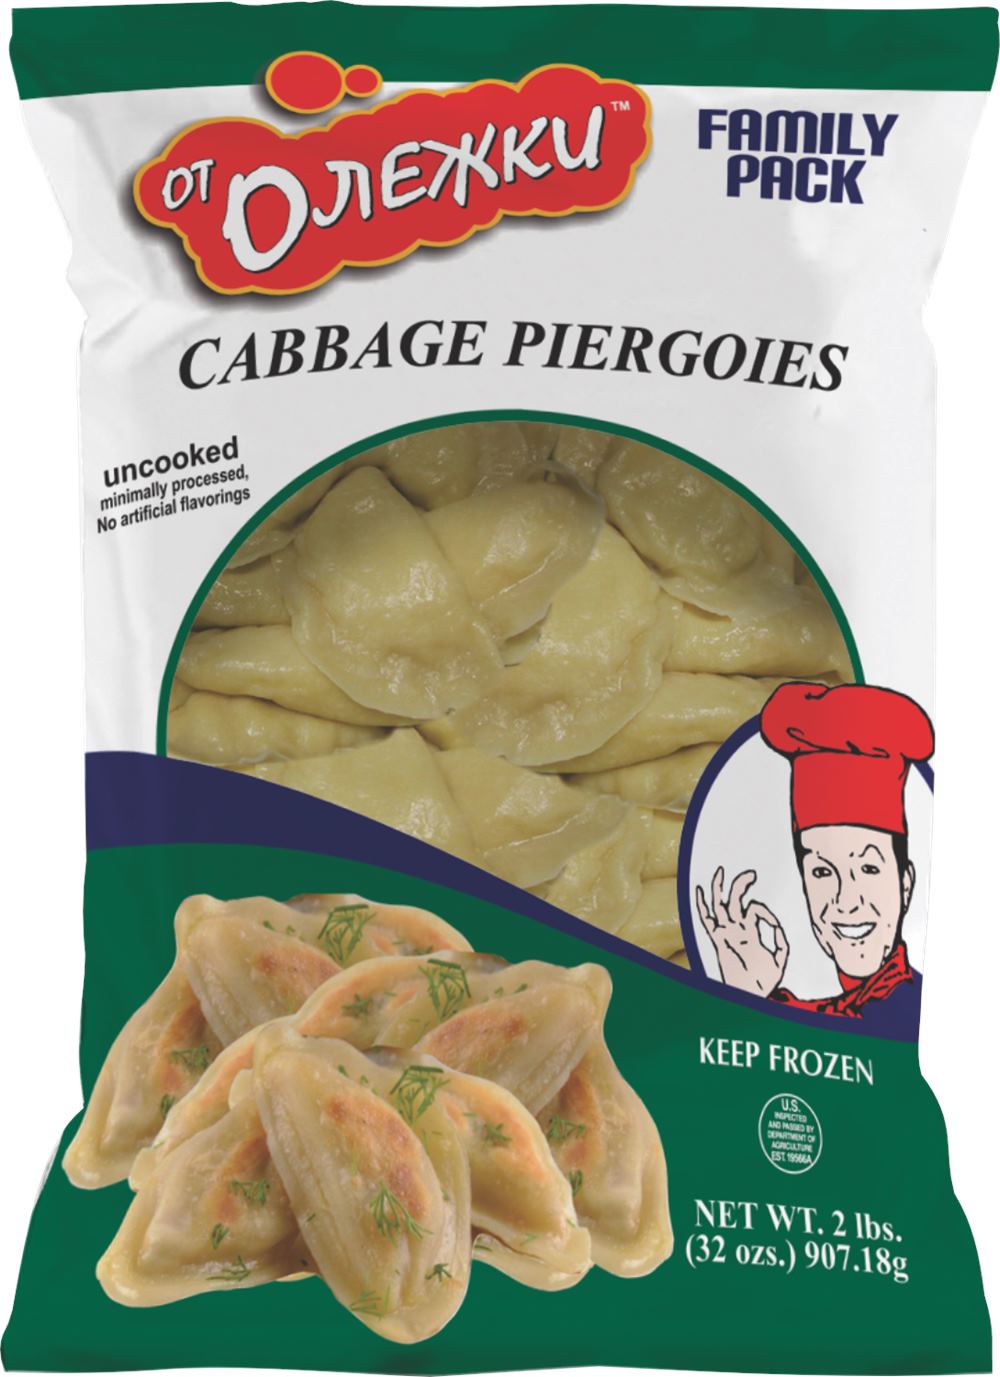 Cabbage Pierogi